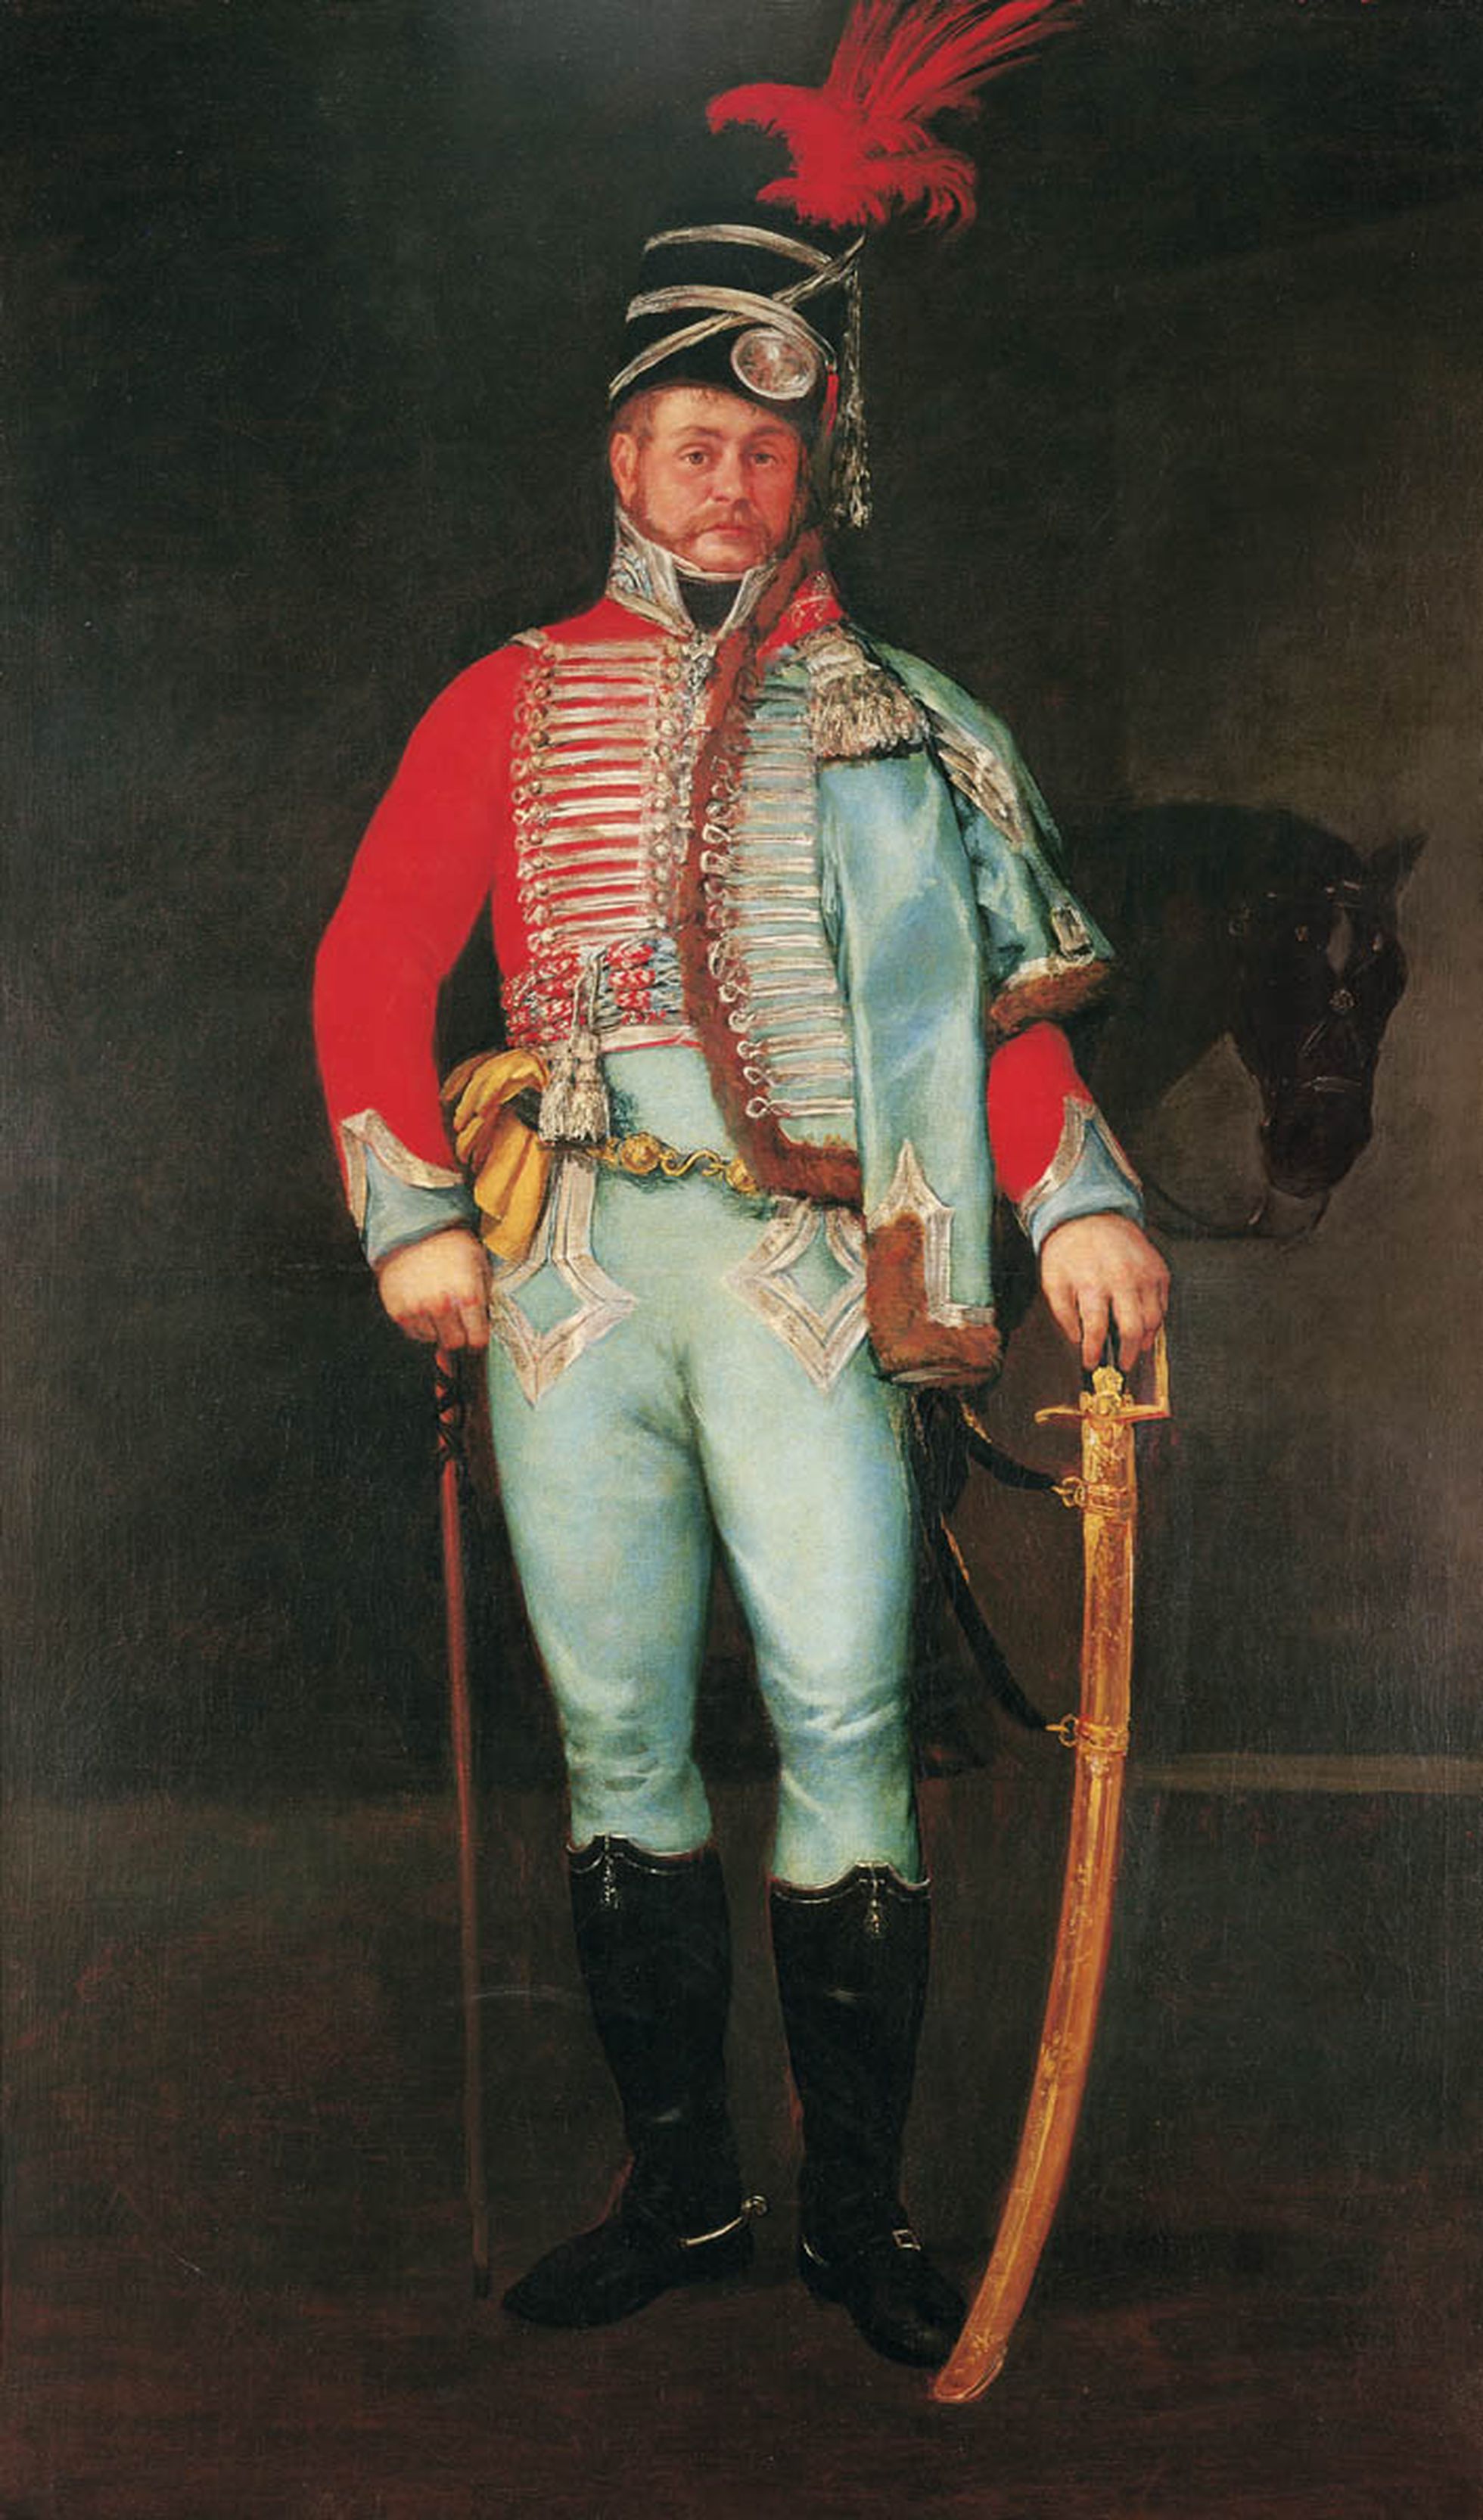 Retrato de Don Pantaleón Pérez de Nenin pintado en 1808 por Goya.